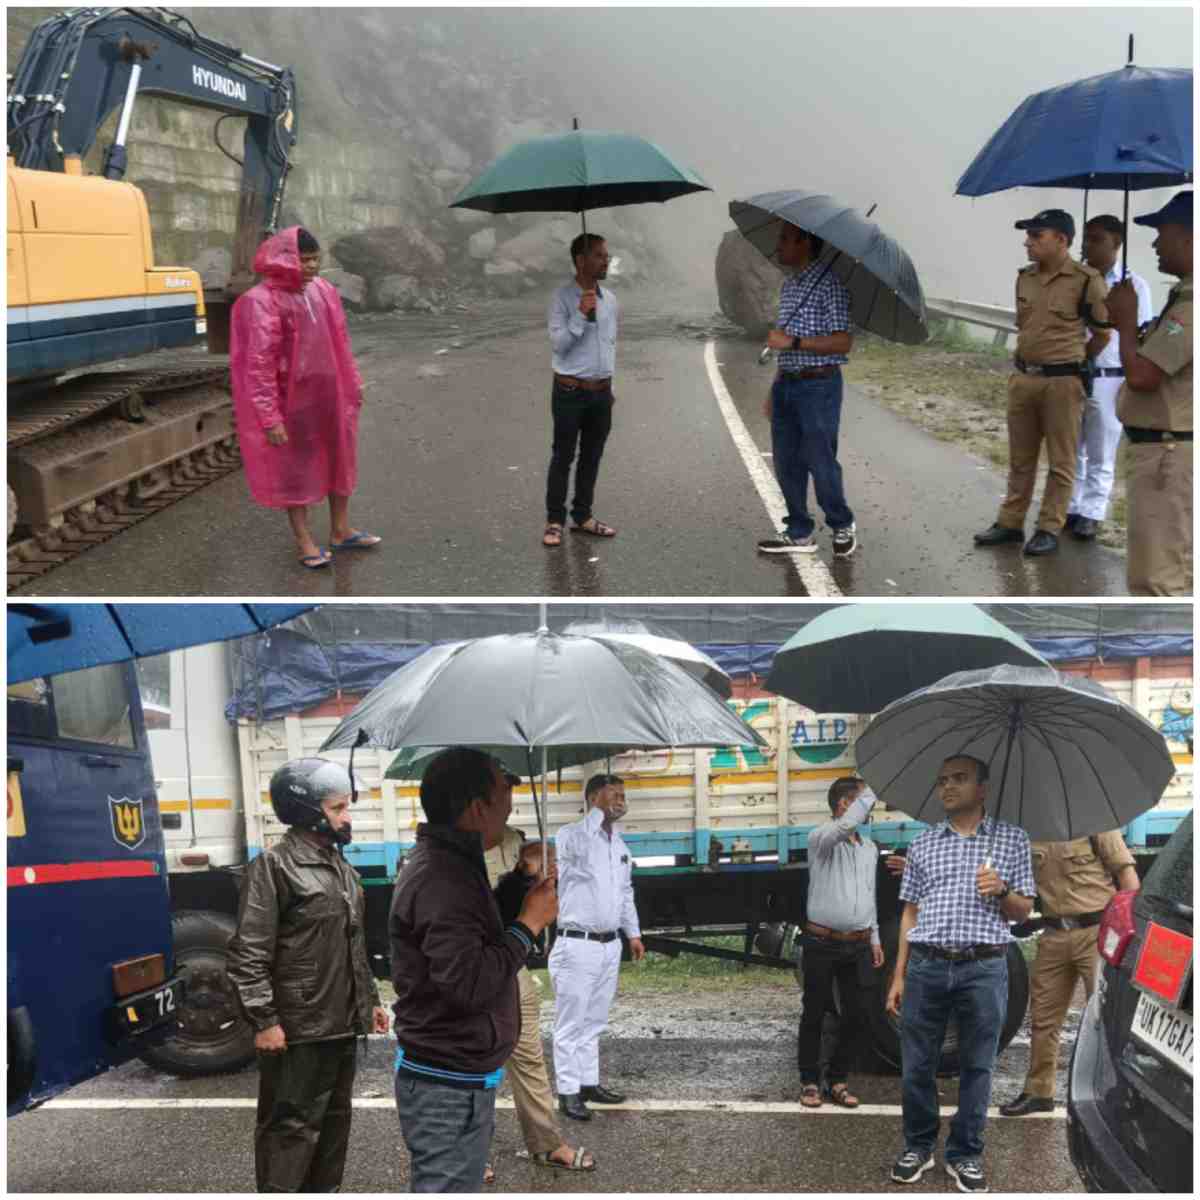 वाह! भारी बारिश में डीएम मयूर दीक्षित छाता लेकर पहुंचे राष्ट्रीय राजमार्ग 94 का निरीक्षण करने, अधिकारियों को दिए ये निर्देश